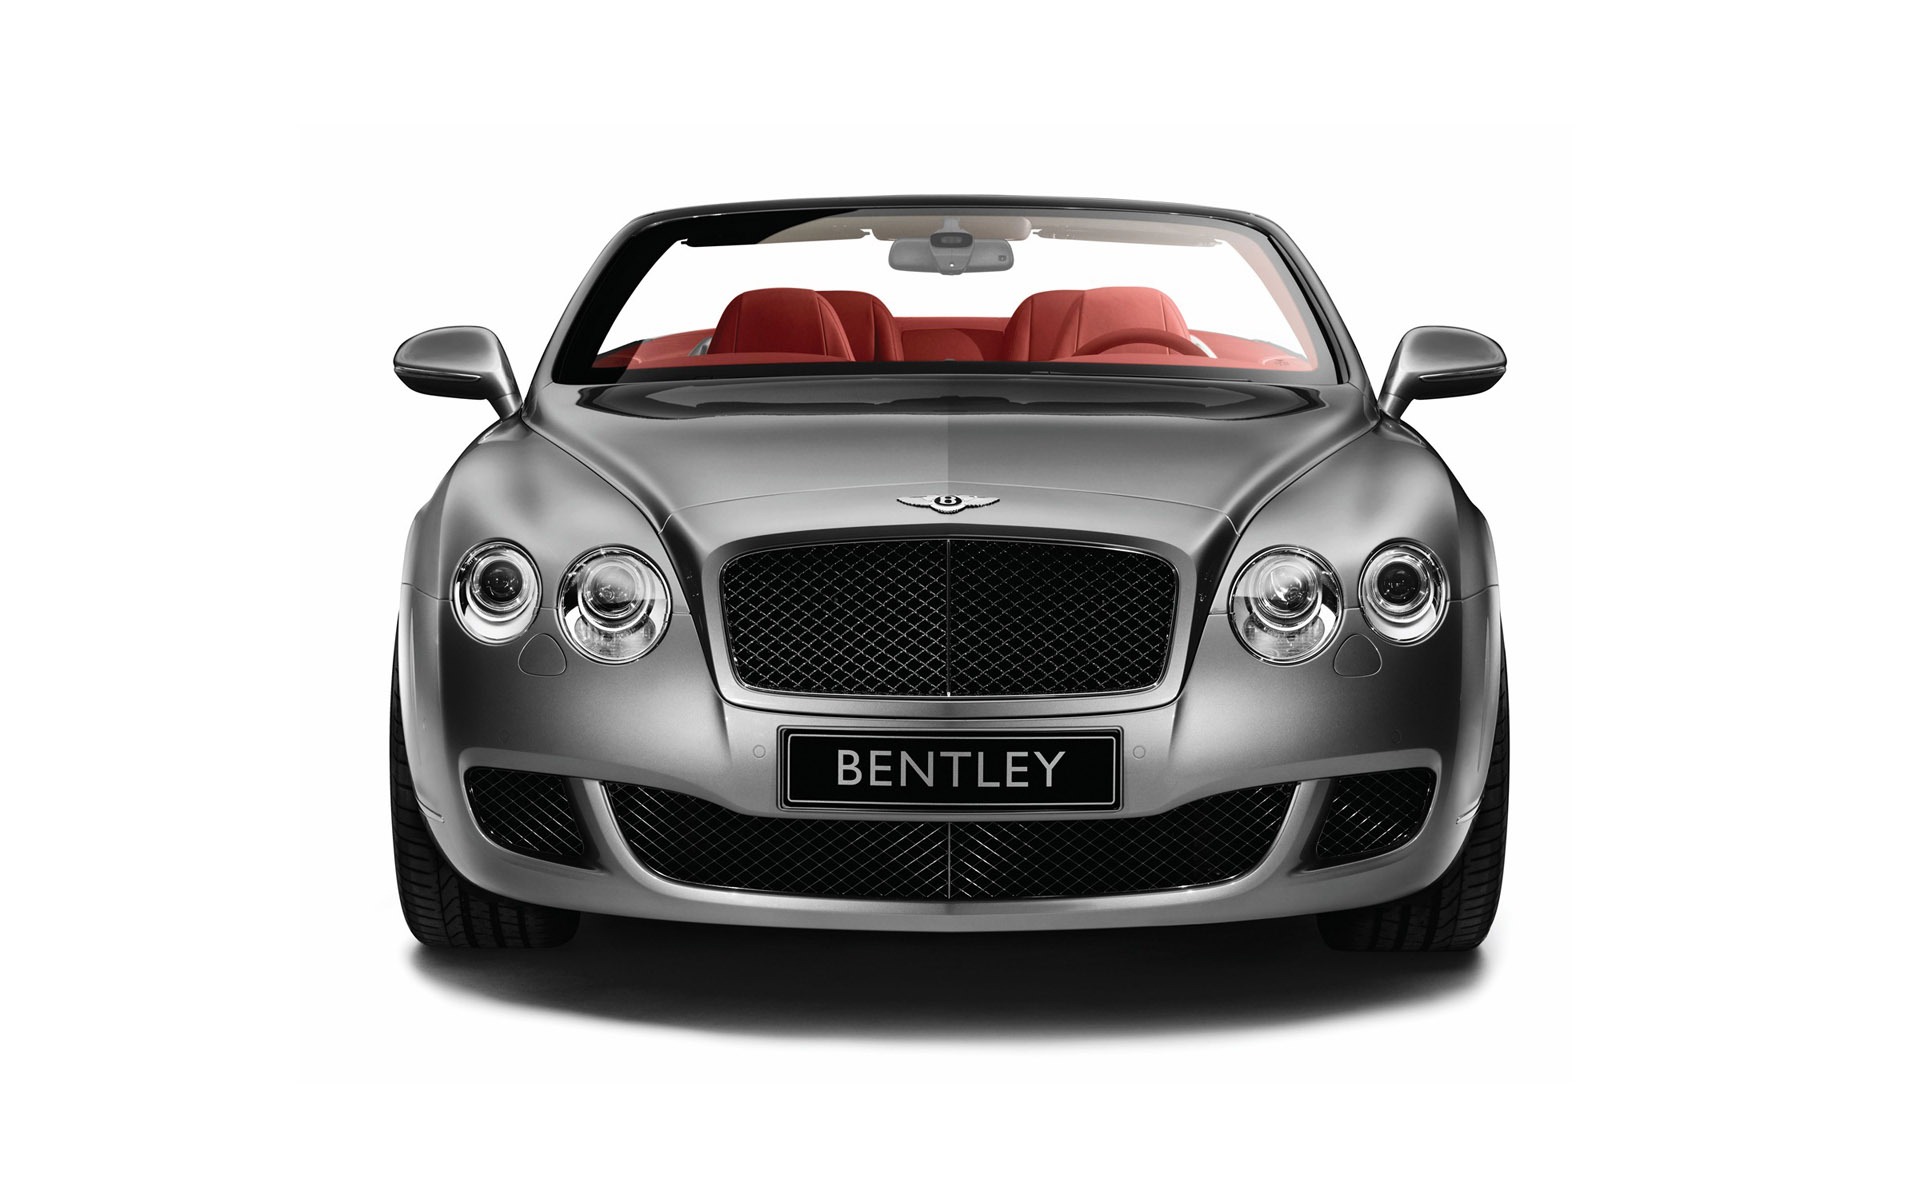 Bentley 宾利 壁纸专辑(一)20 - 1920x1200